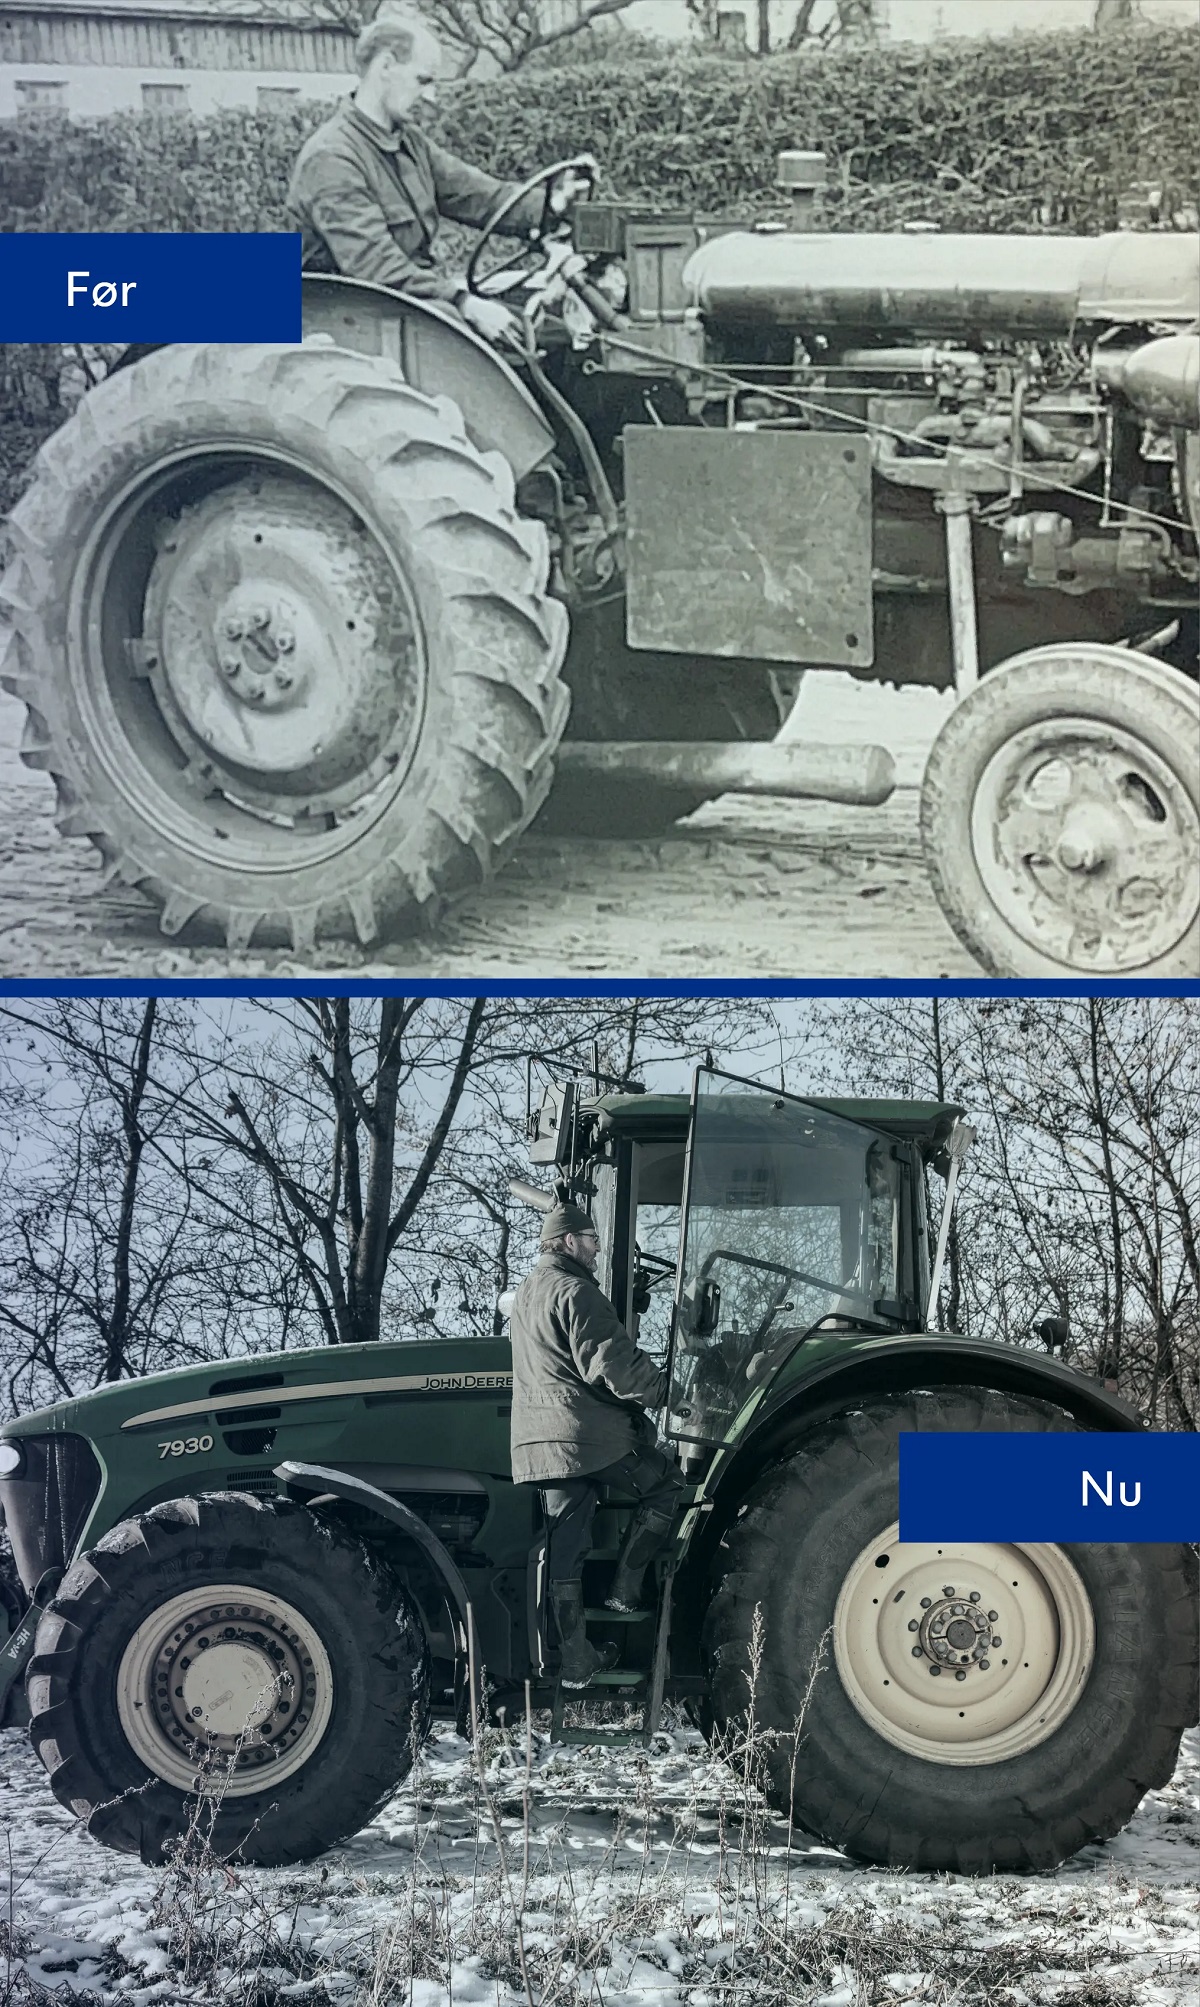 Billede af brug af traktorer før og nu. Før billedet viser en gammel traktor uden sikkerhedsudstyr. Nu billedet viser en moderne traktor.